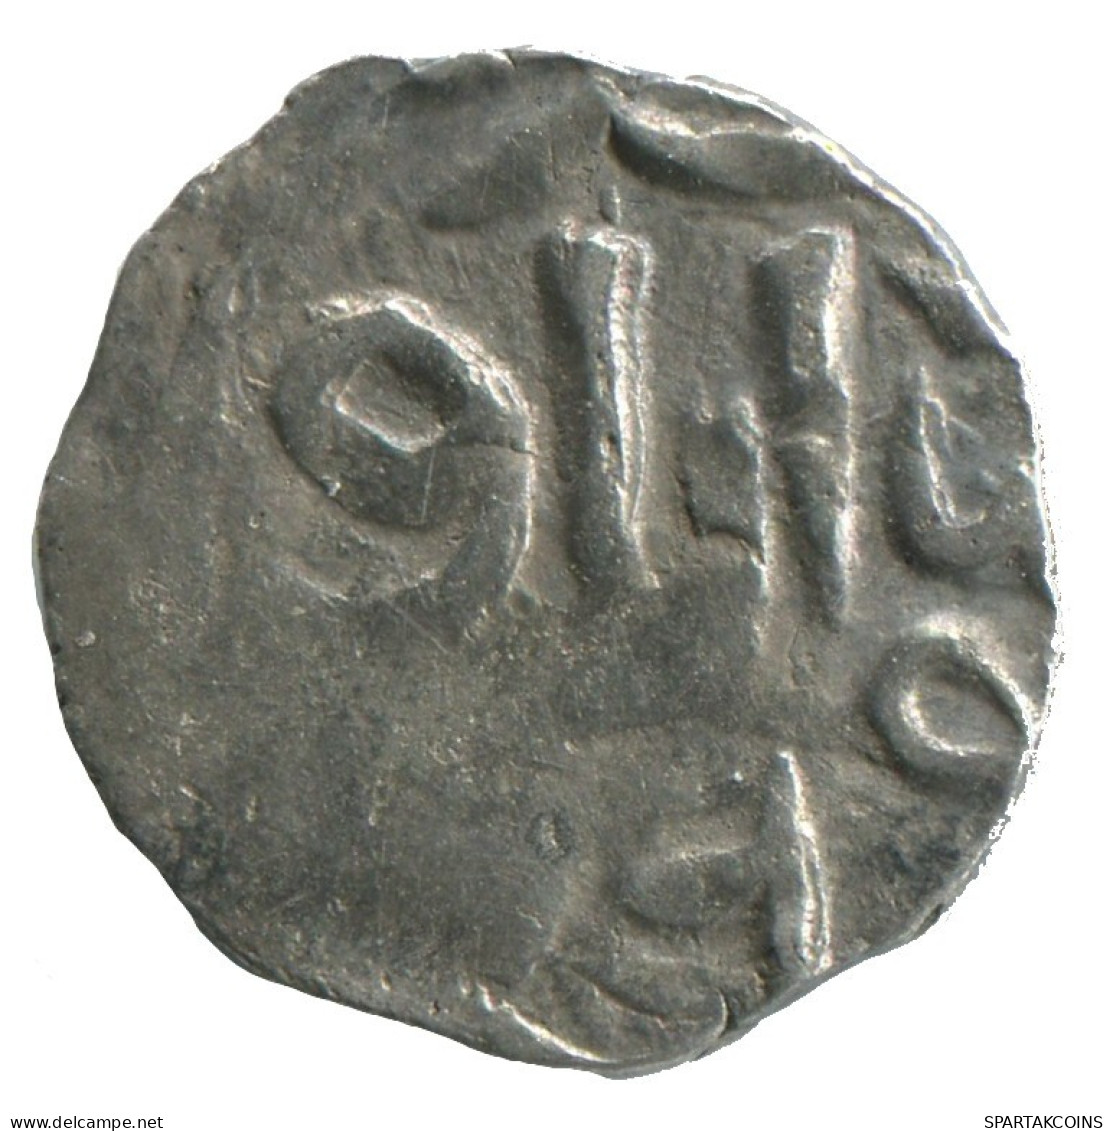 GOLDEN HORDE Silver Dirham Medieval Islamic Coin 1.3g/16mm #NNN2017.8.D.A - Islamische Münzen